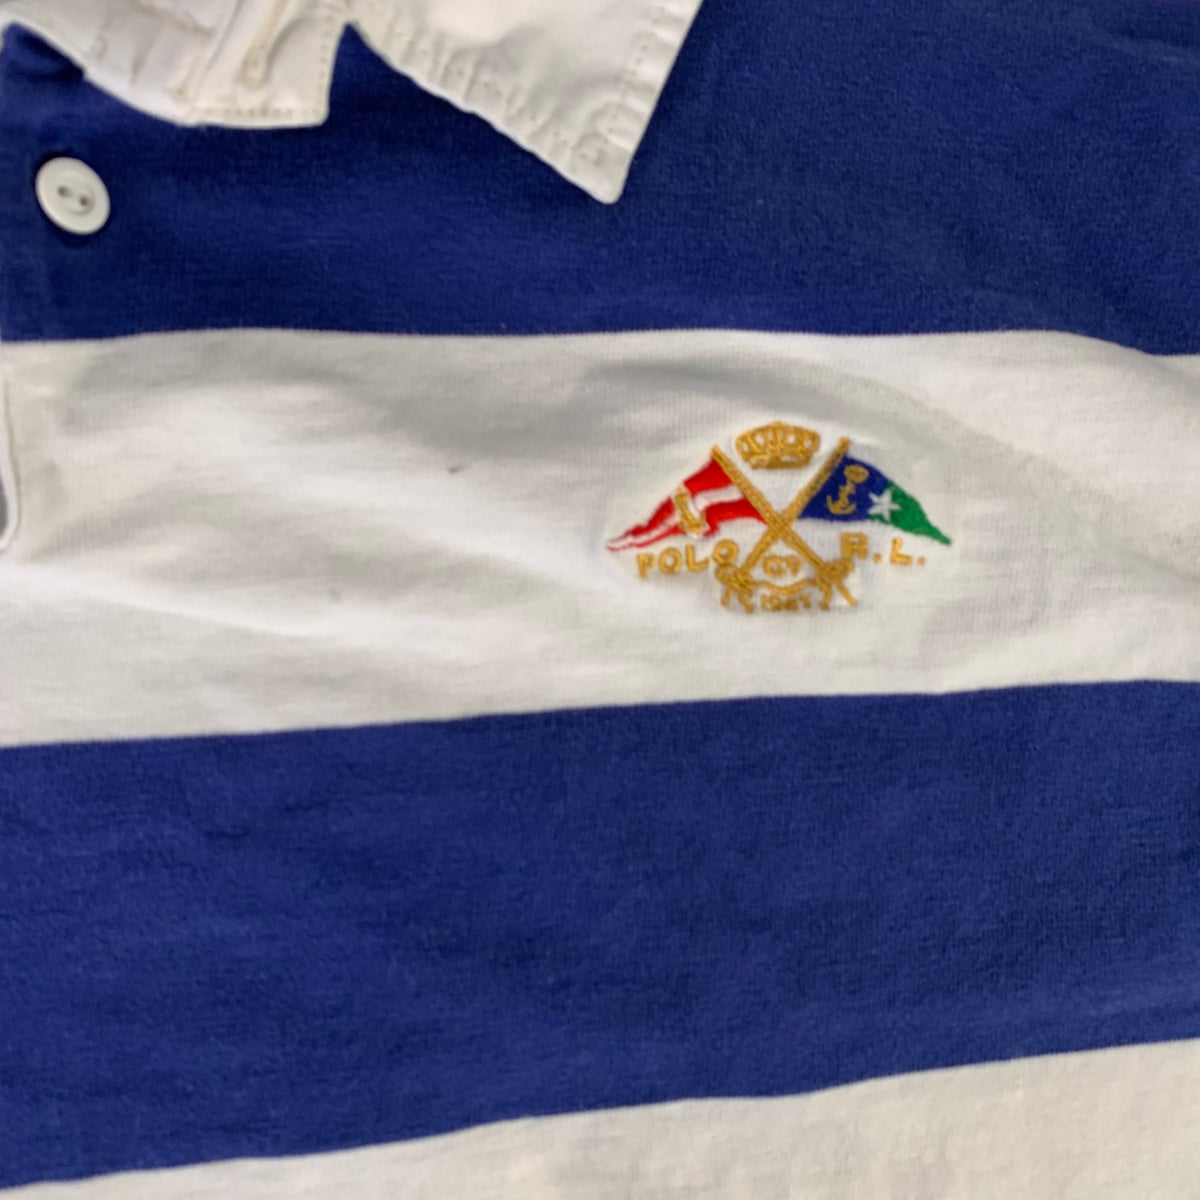 Vintage Ralph Lauren &quot;Striped&quot; Rugby Shirt